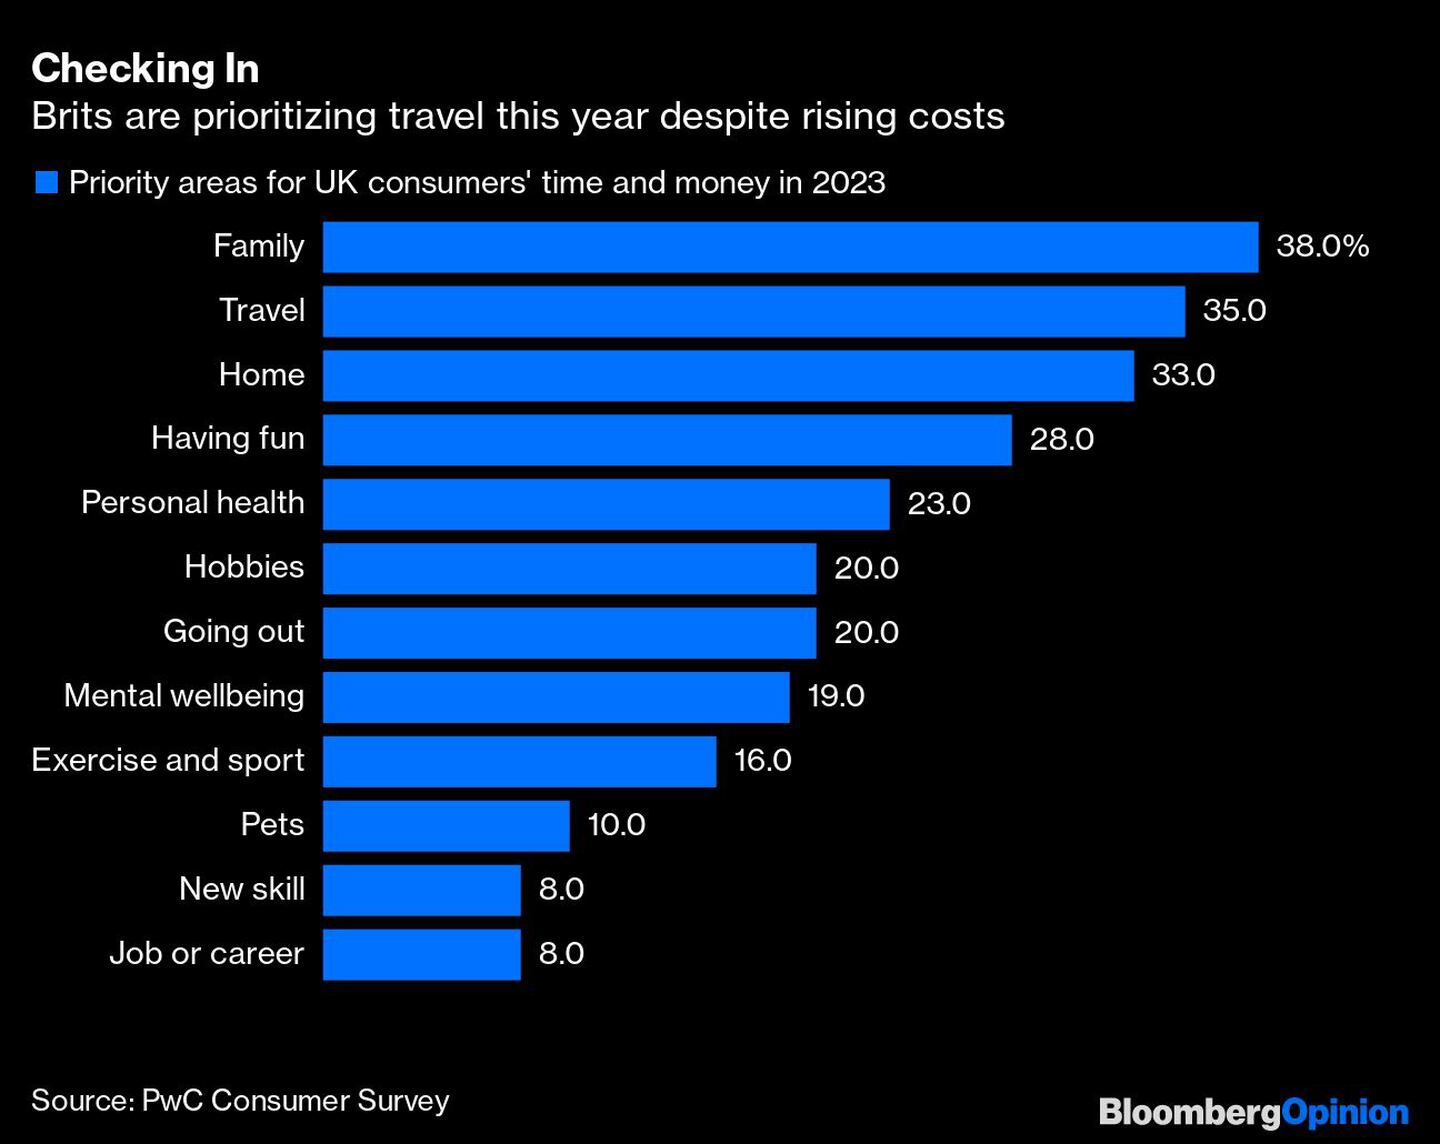 Los británicos están priorizando los viajes pese a los mayores costosdfd